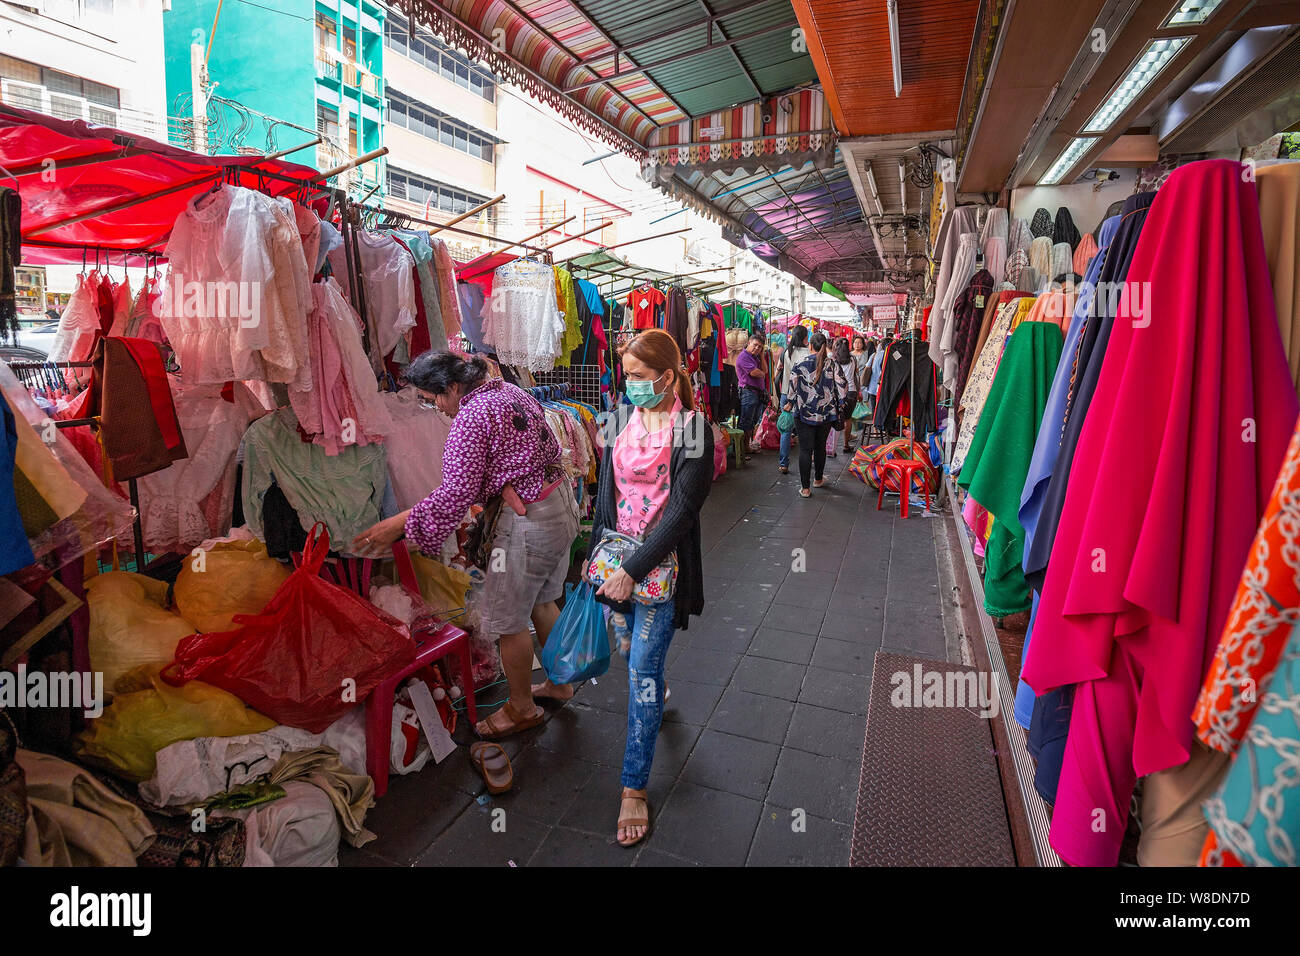 BANGKOK, THAÏLANDE - 22 déc 2018 : personnes non identifiées à la boutique un marché dans Little India. Little India est un quartier ethnique entourant Phahurat R Banque D'Images